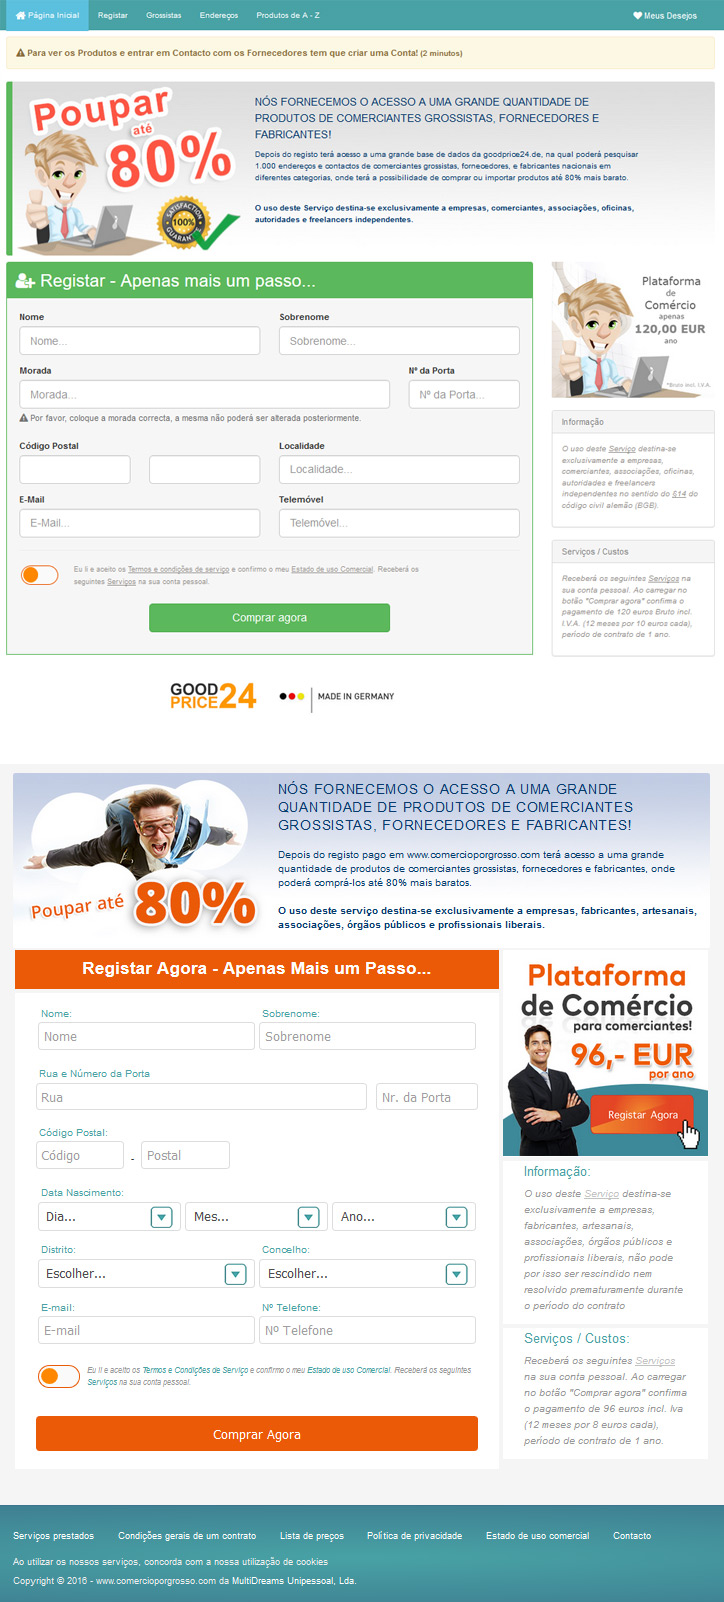 Tenta encontrar as diferenças entre o site comercioporgrosso.com e goodprice24.de